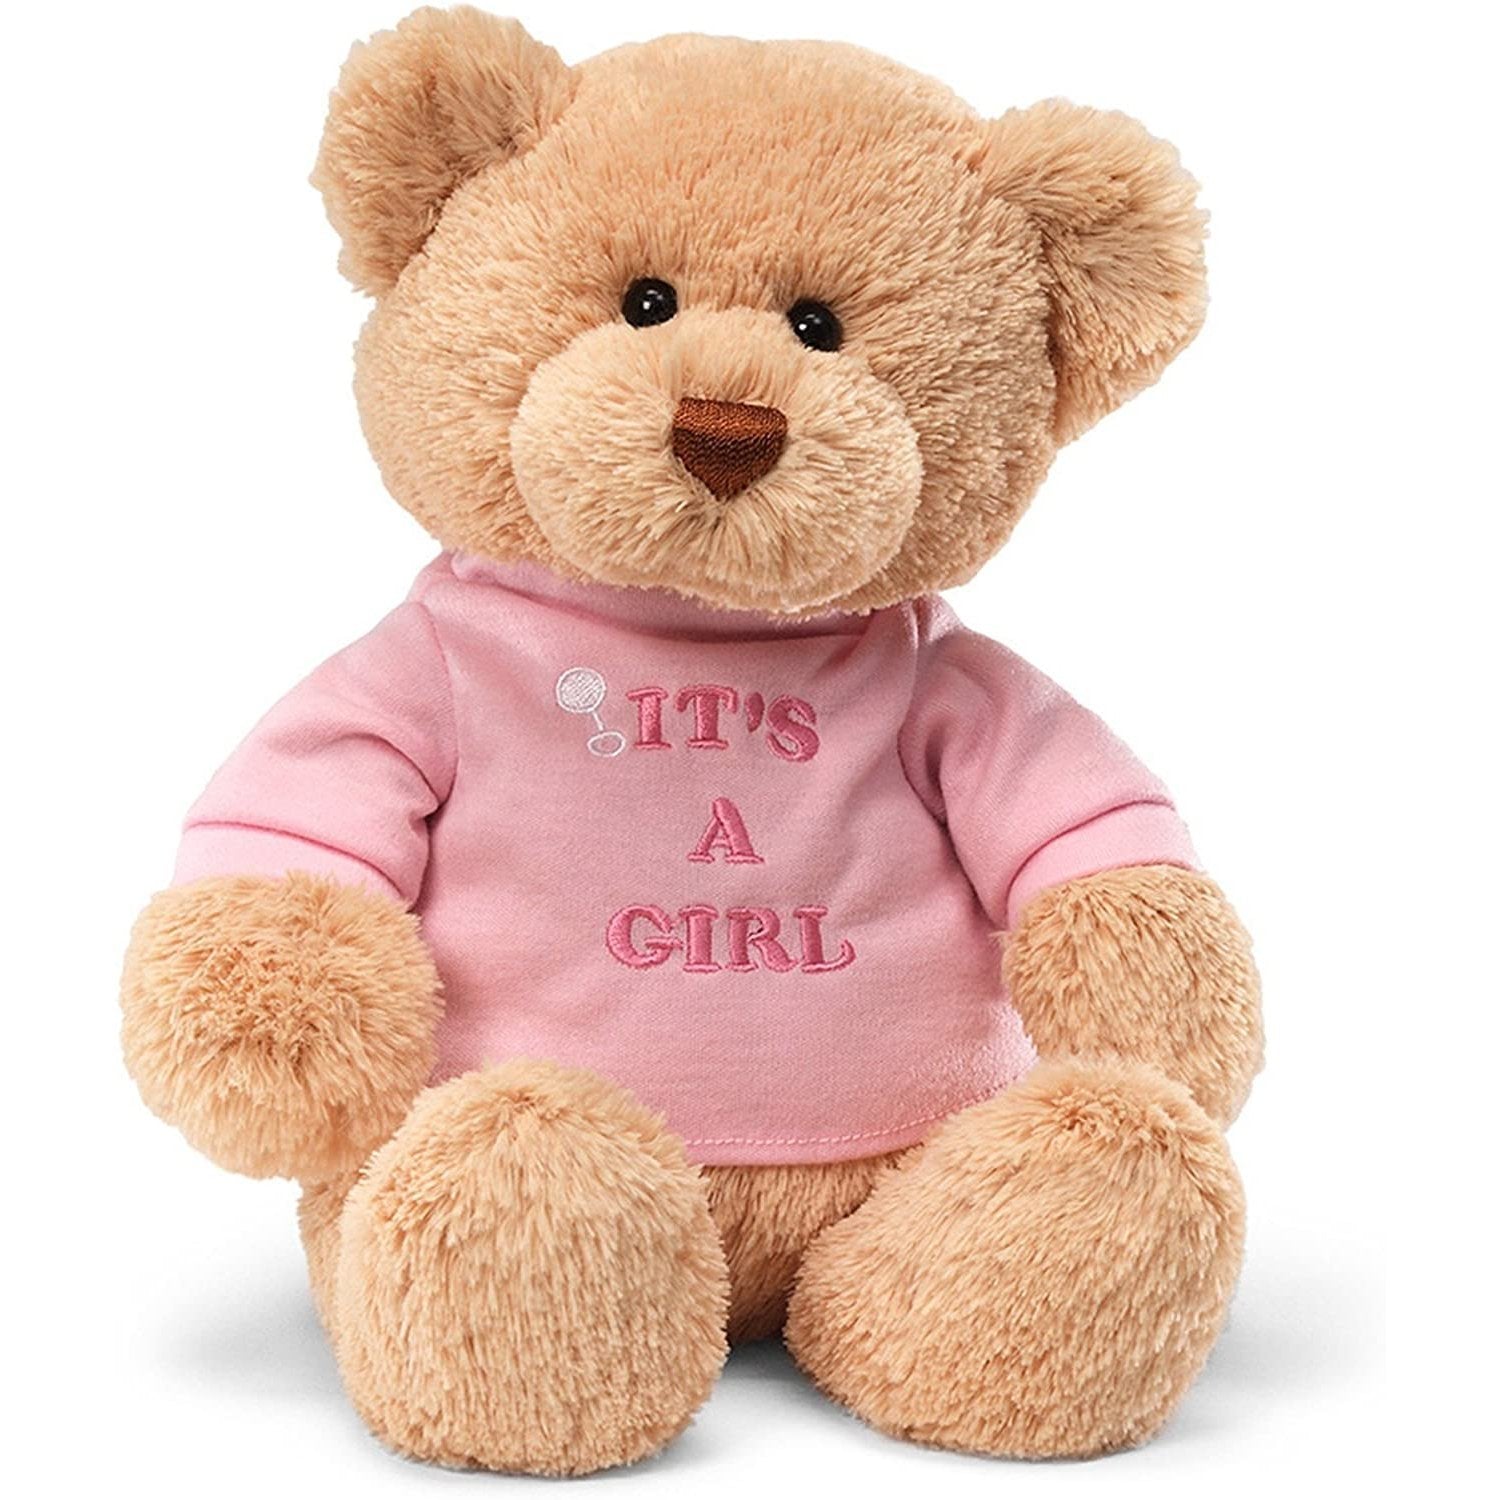 http://www.littlegiantkidz.com/cdn/shop/products/GUND-Its-a-Girl-T-Shirt-Teddy-Bear-Stuffed-Animal-Plush-12-GUND.jpg?v=1635373147&width=2048